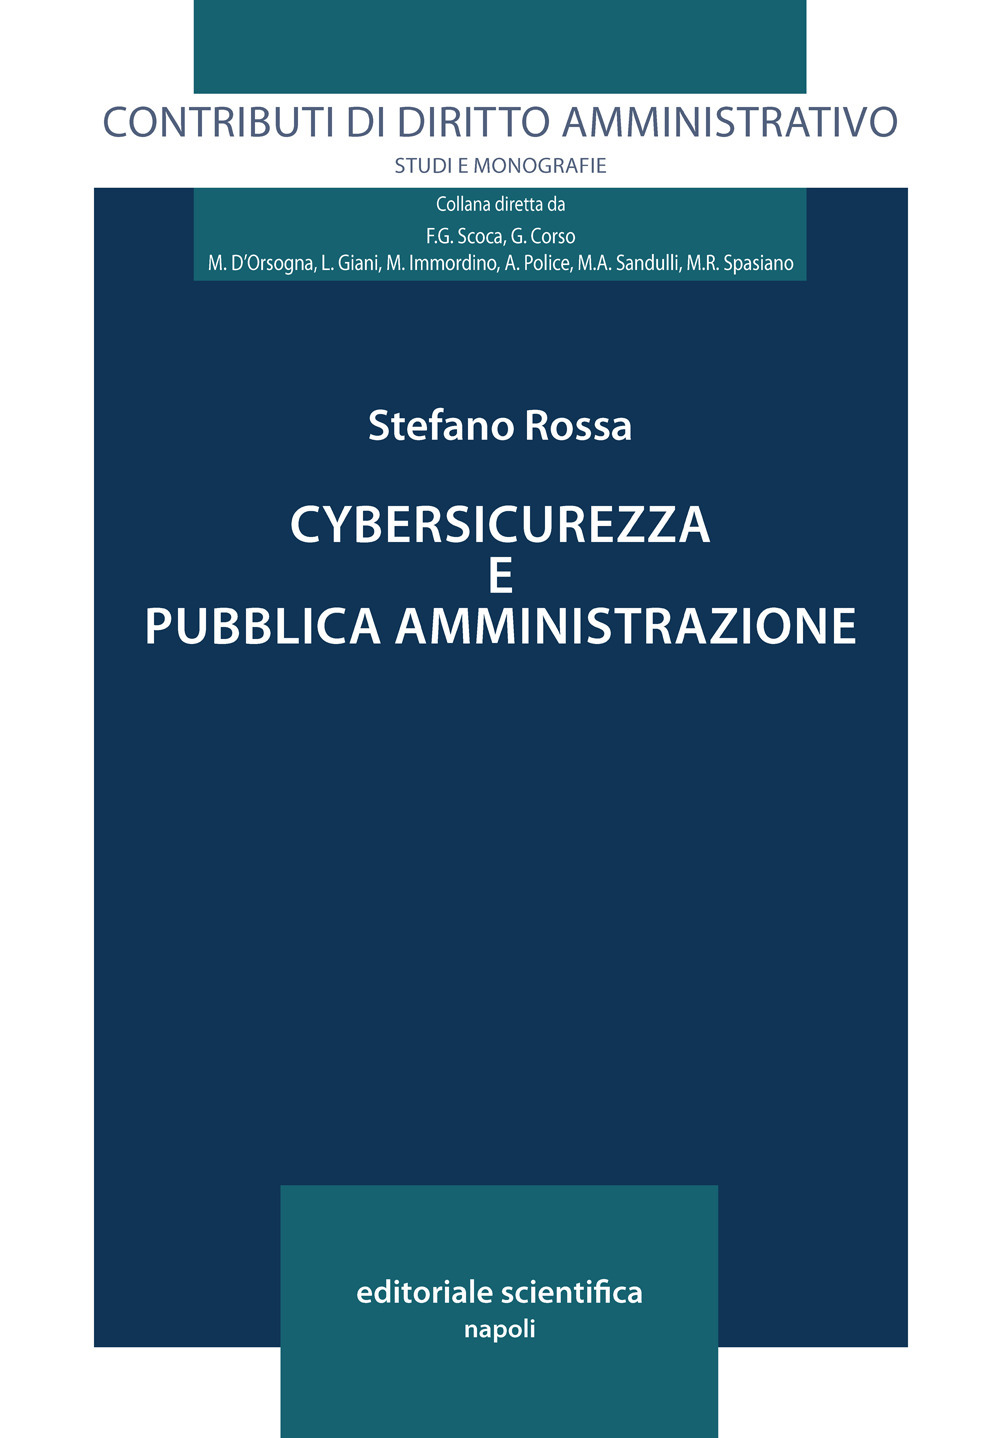 Cybersicurezza e pubblica amministrazione